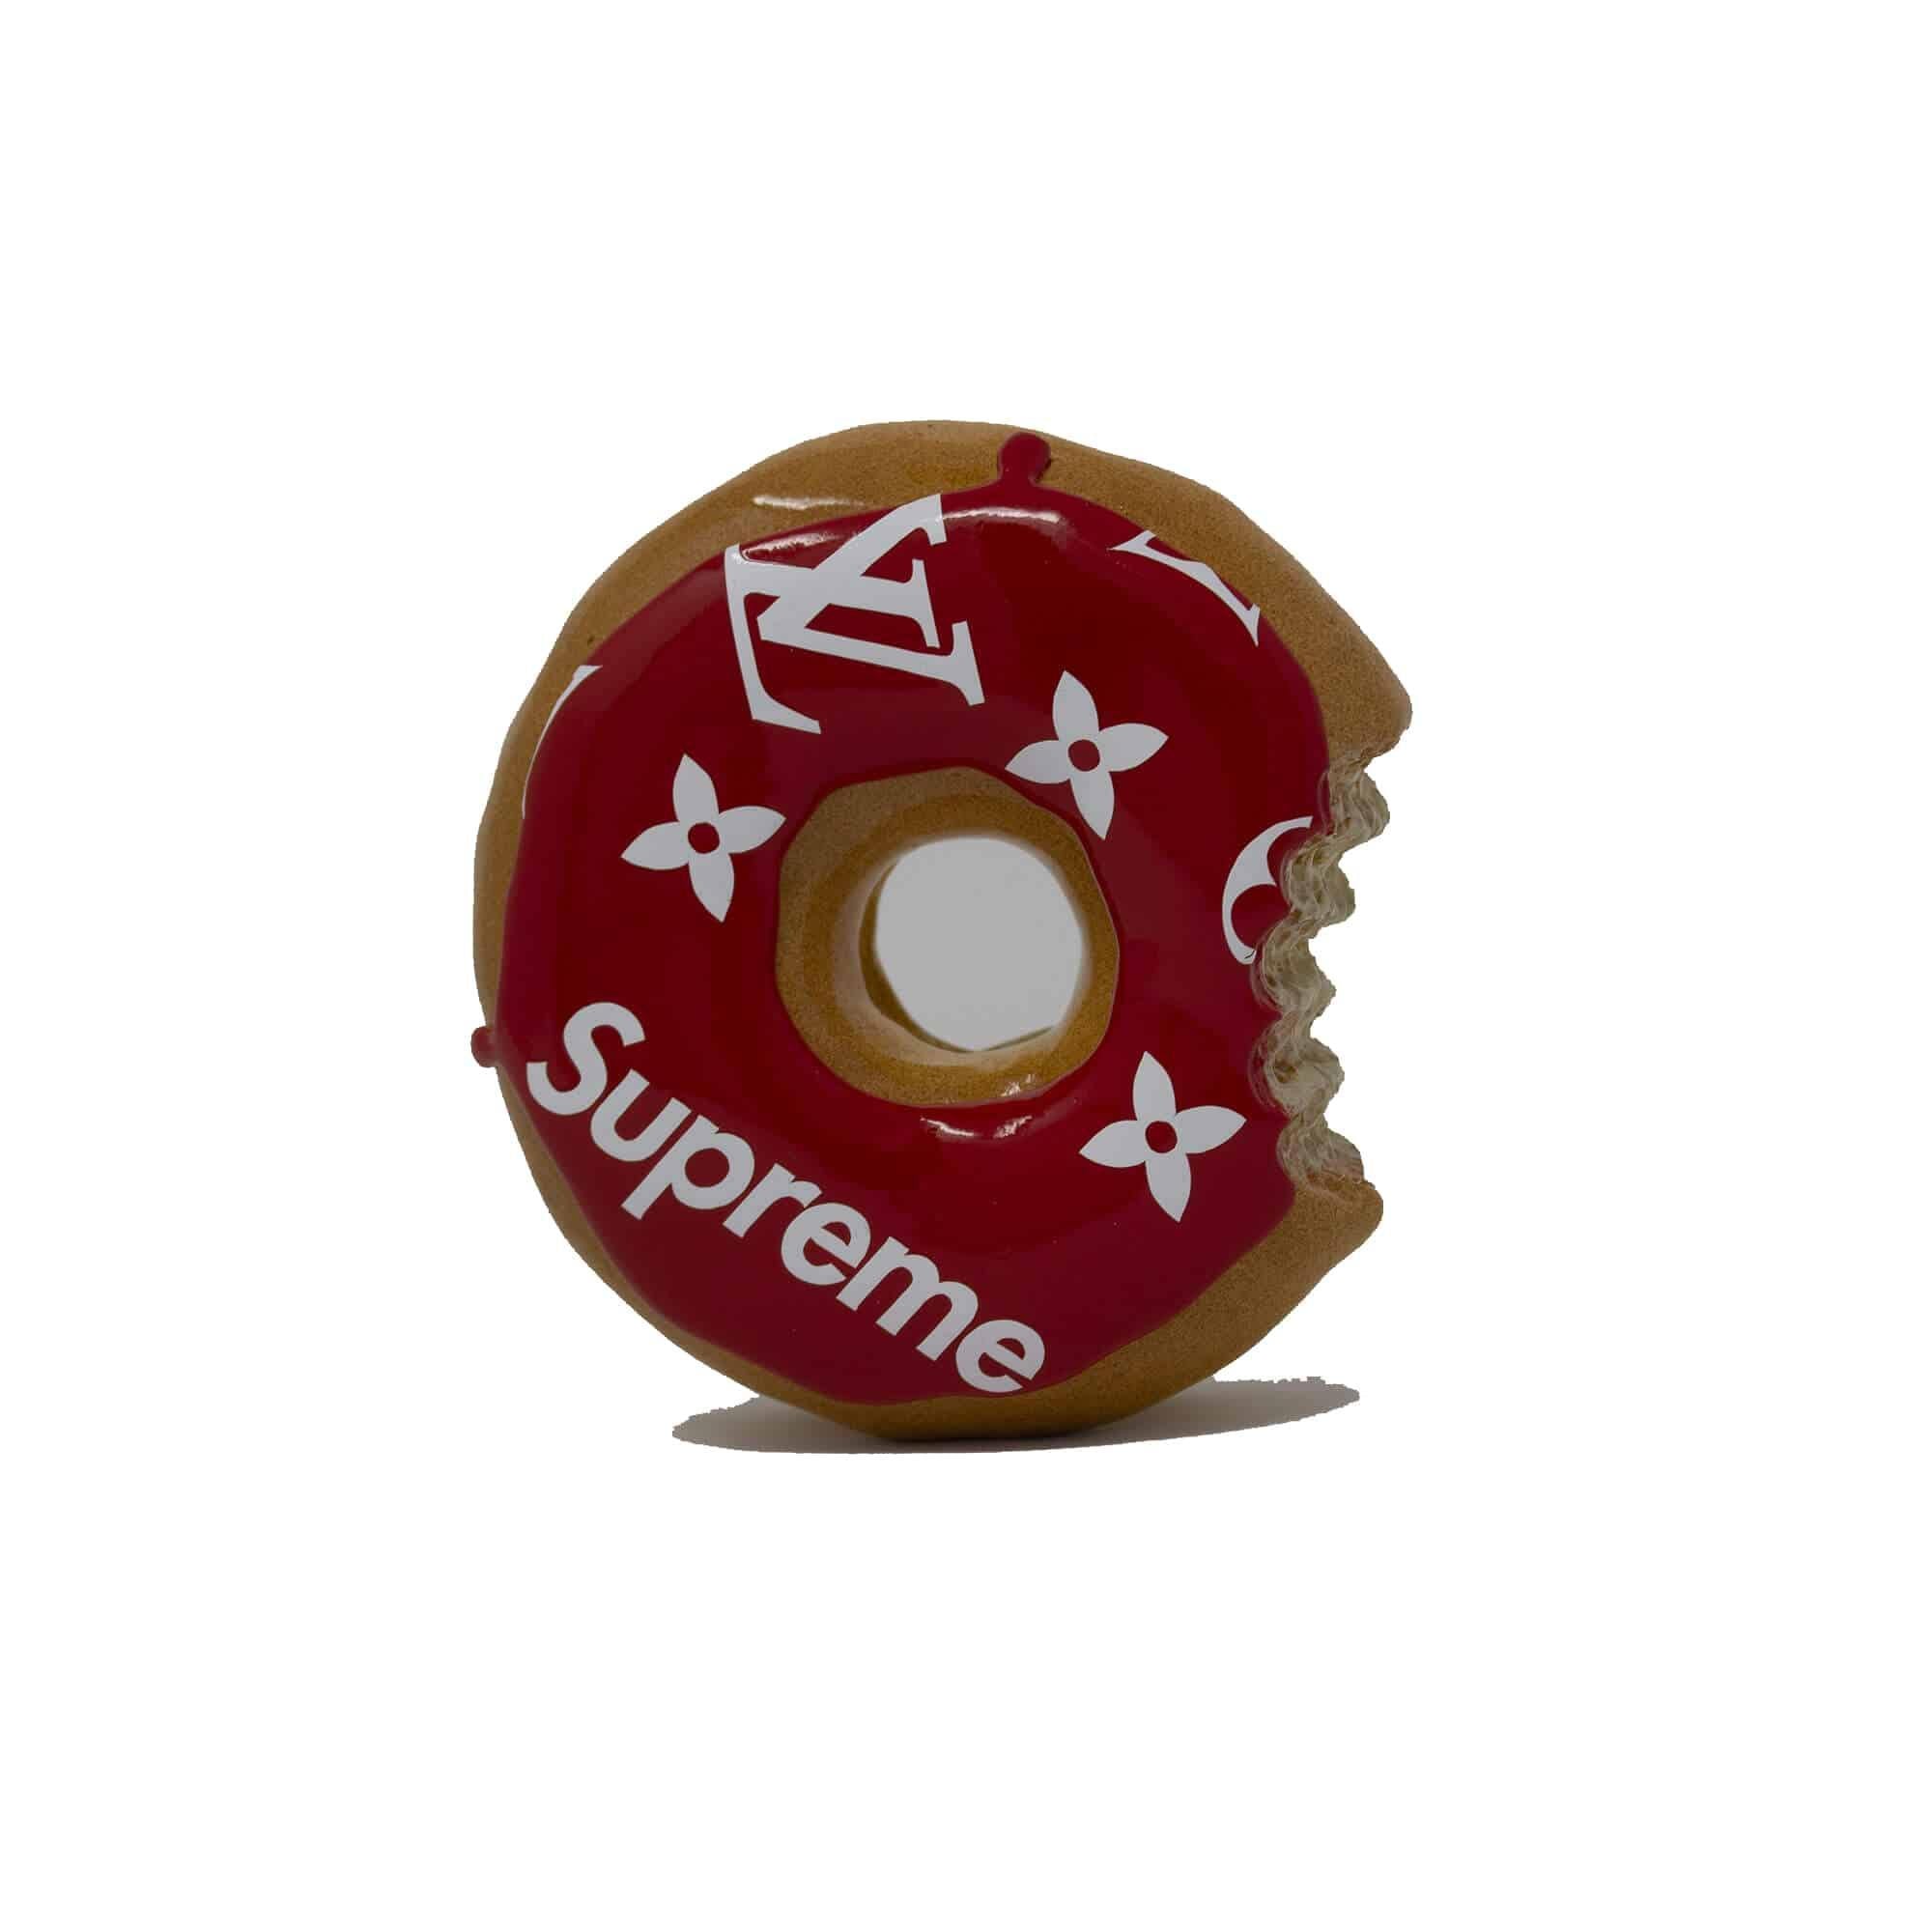 LV Supreme Donut – Twinkling Design